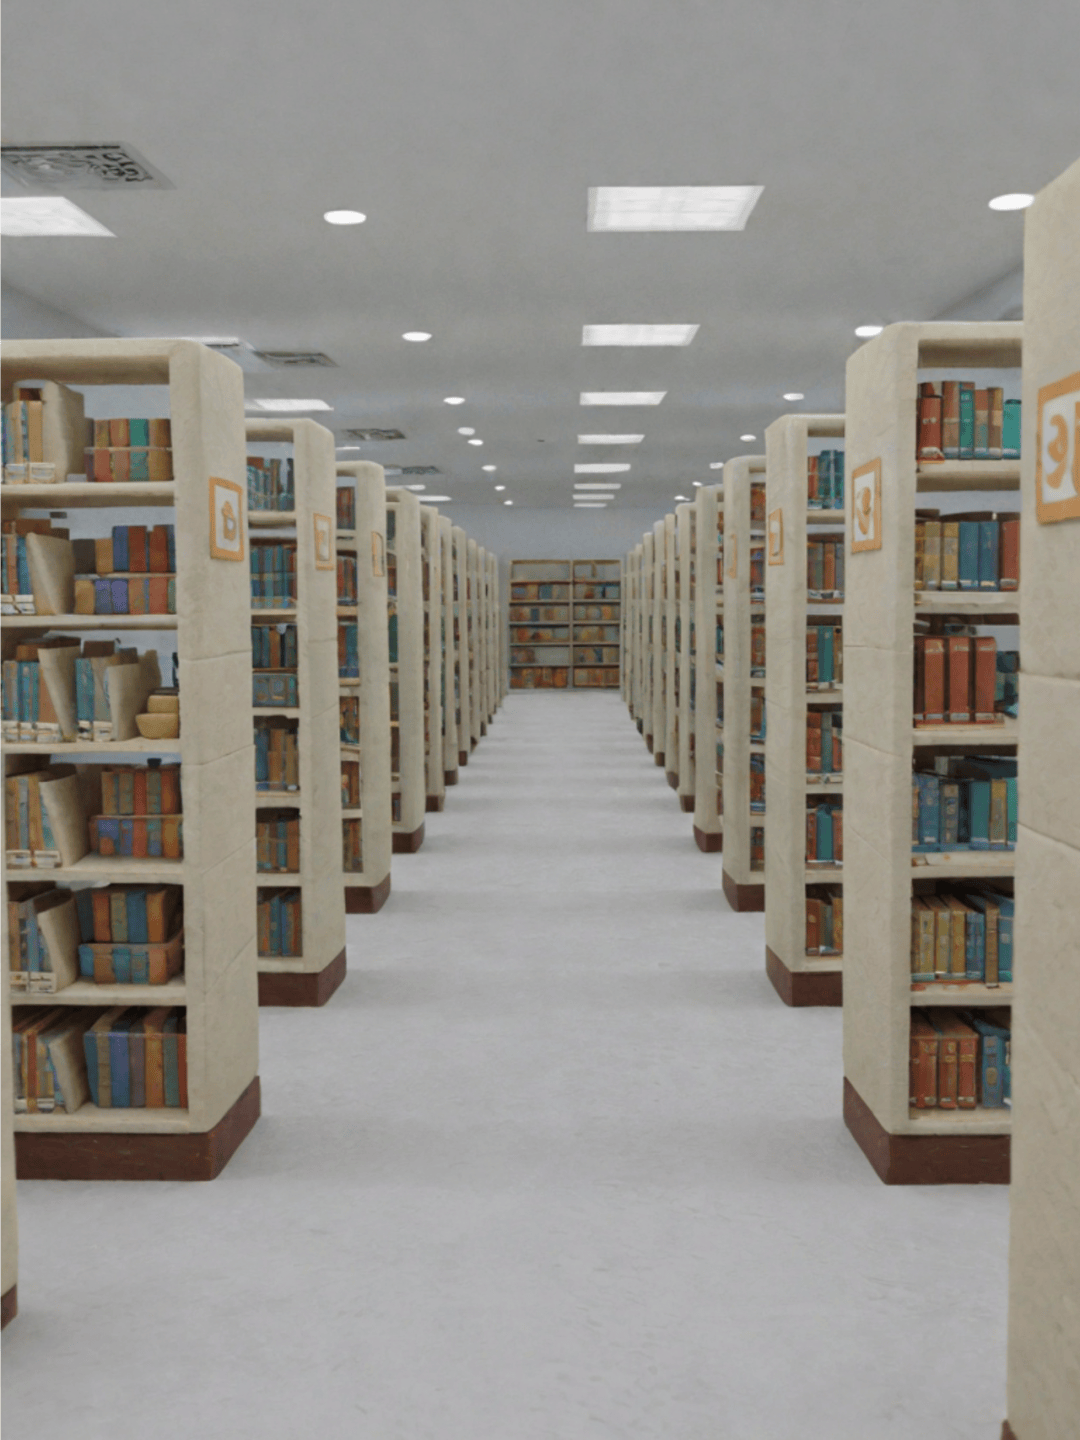 图书馆变成安静而美丽的地方在黏土滤镜的奇幻视角下0276向右滑动